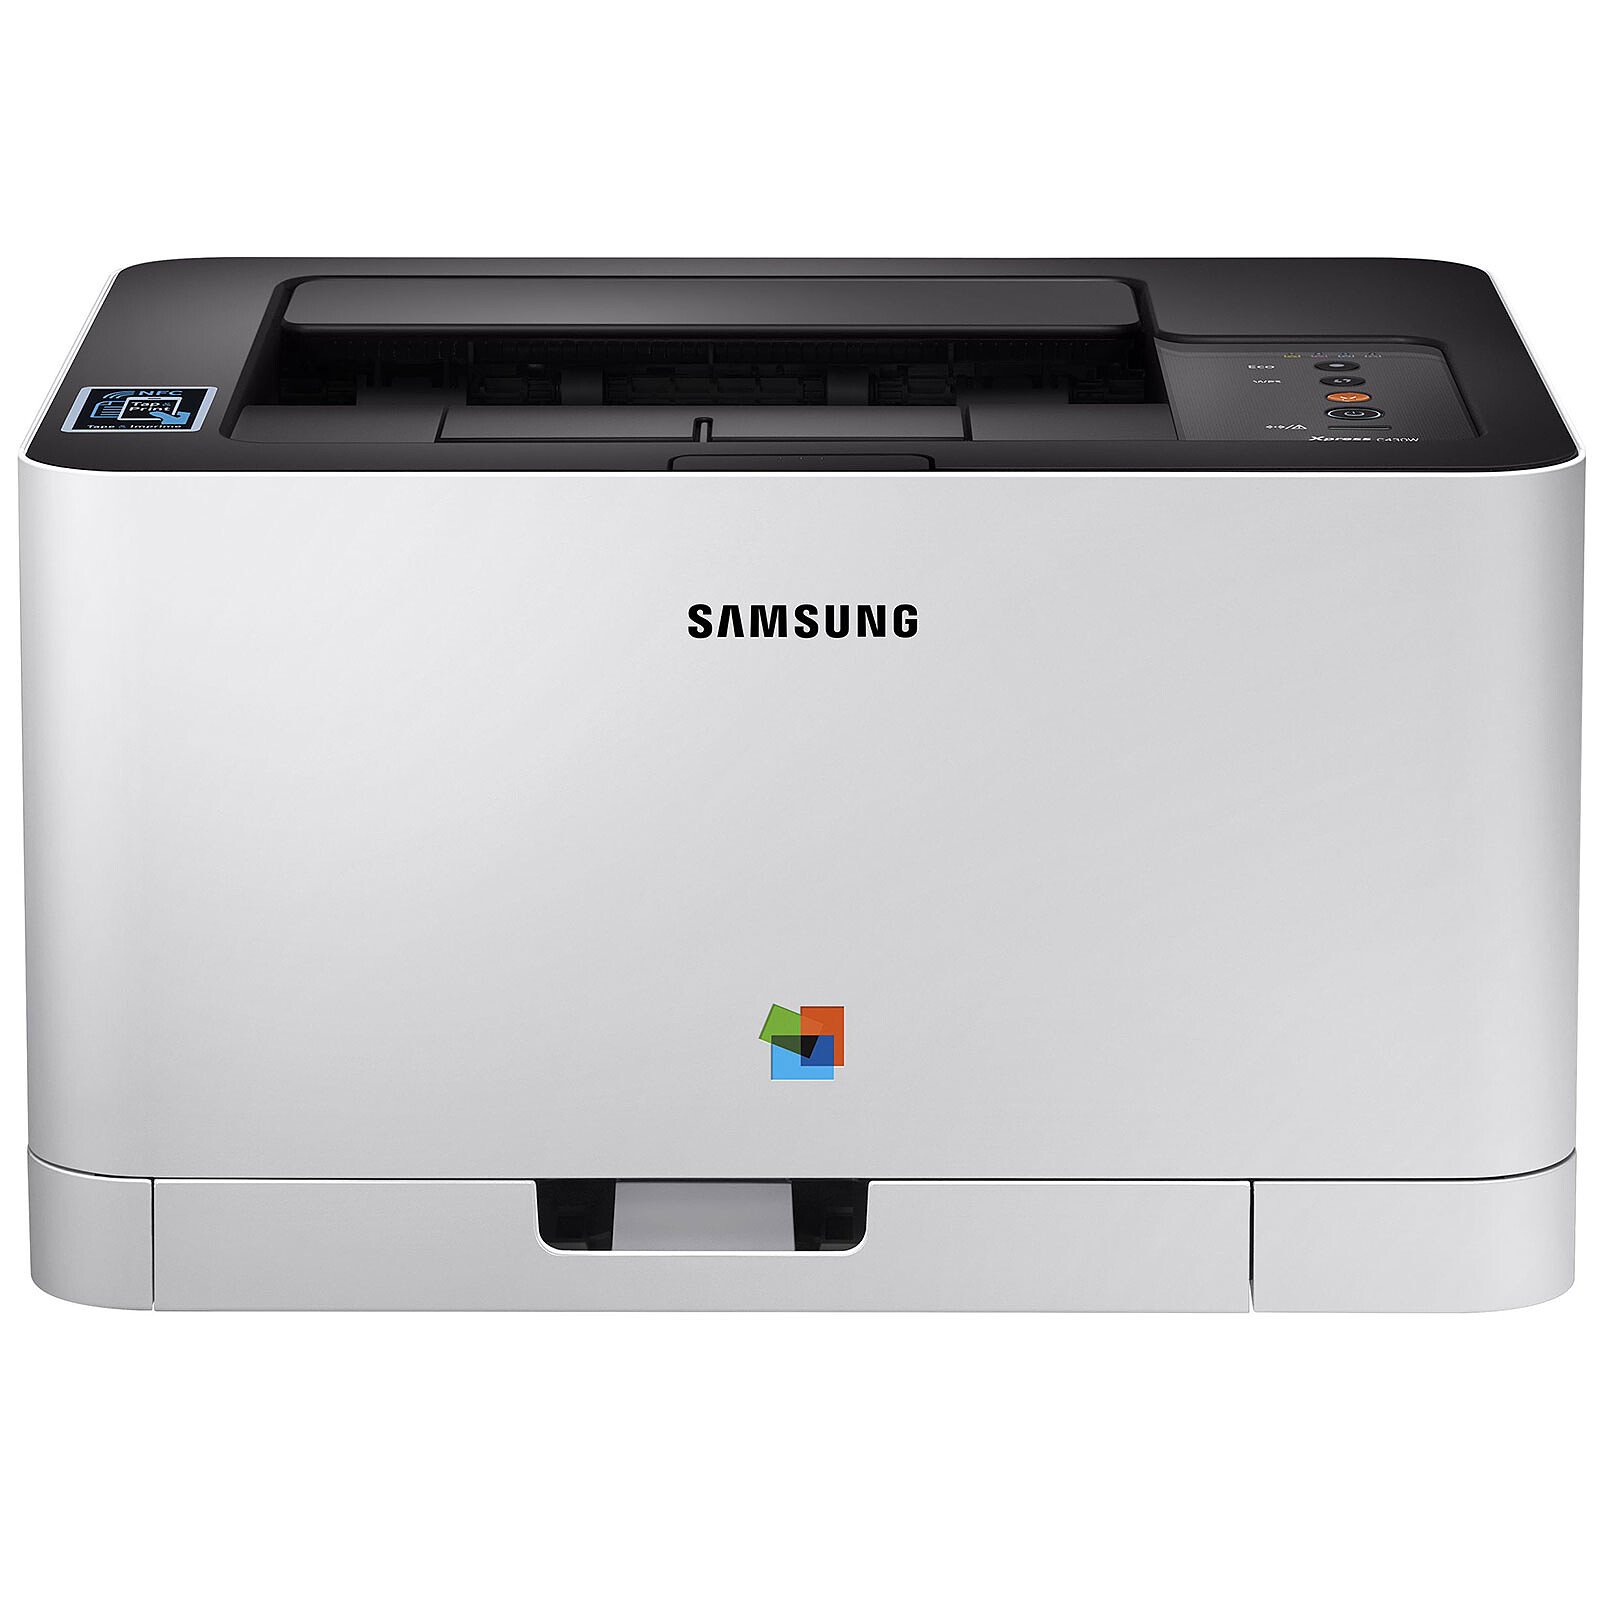 Лазерные принтеры samsung купить. Samsung SL-c410w. Samsung Xpress c430. Принтер Samsung Xpress c430w. Принтер лазерный Samsung Xpress c430.